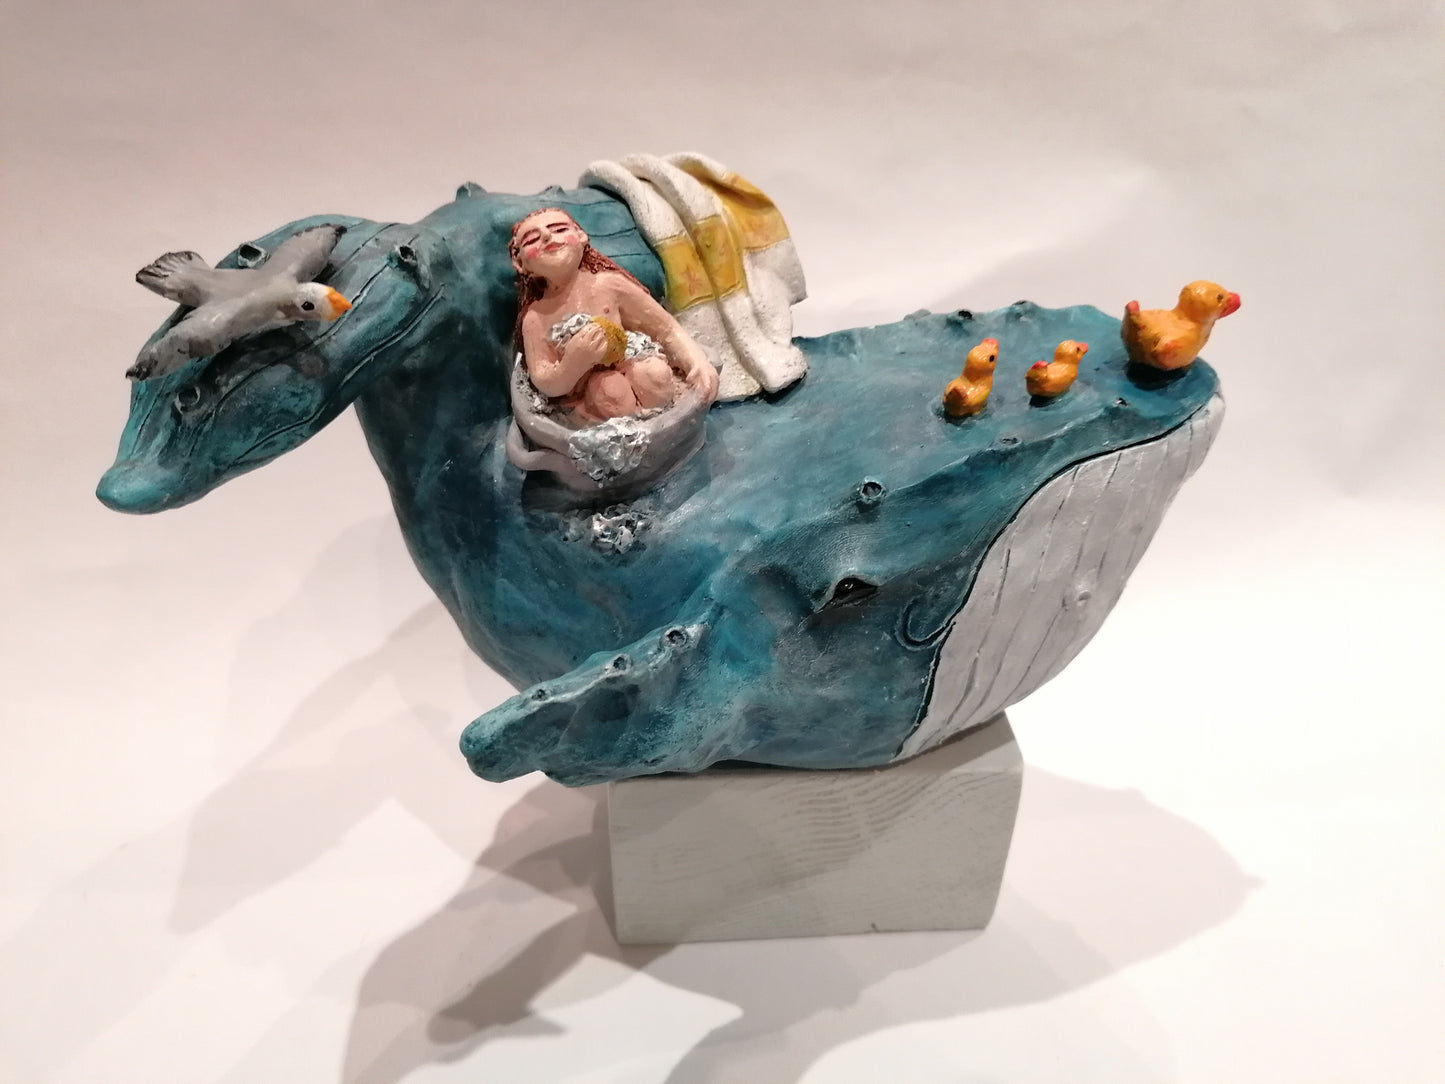 Baleine avec la petite baigneuse dans sa bassine et les canards By Sandrine De Zorzi